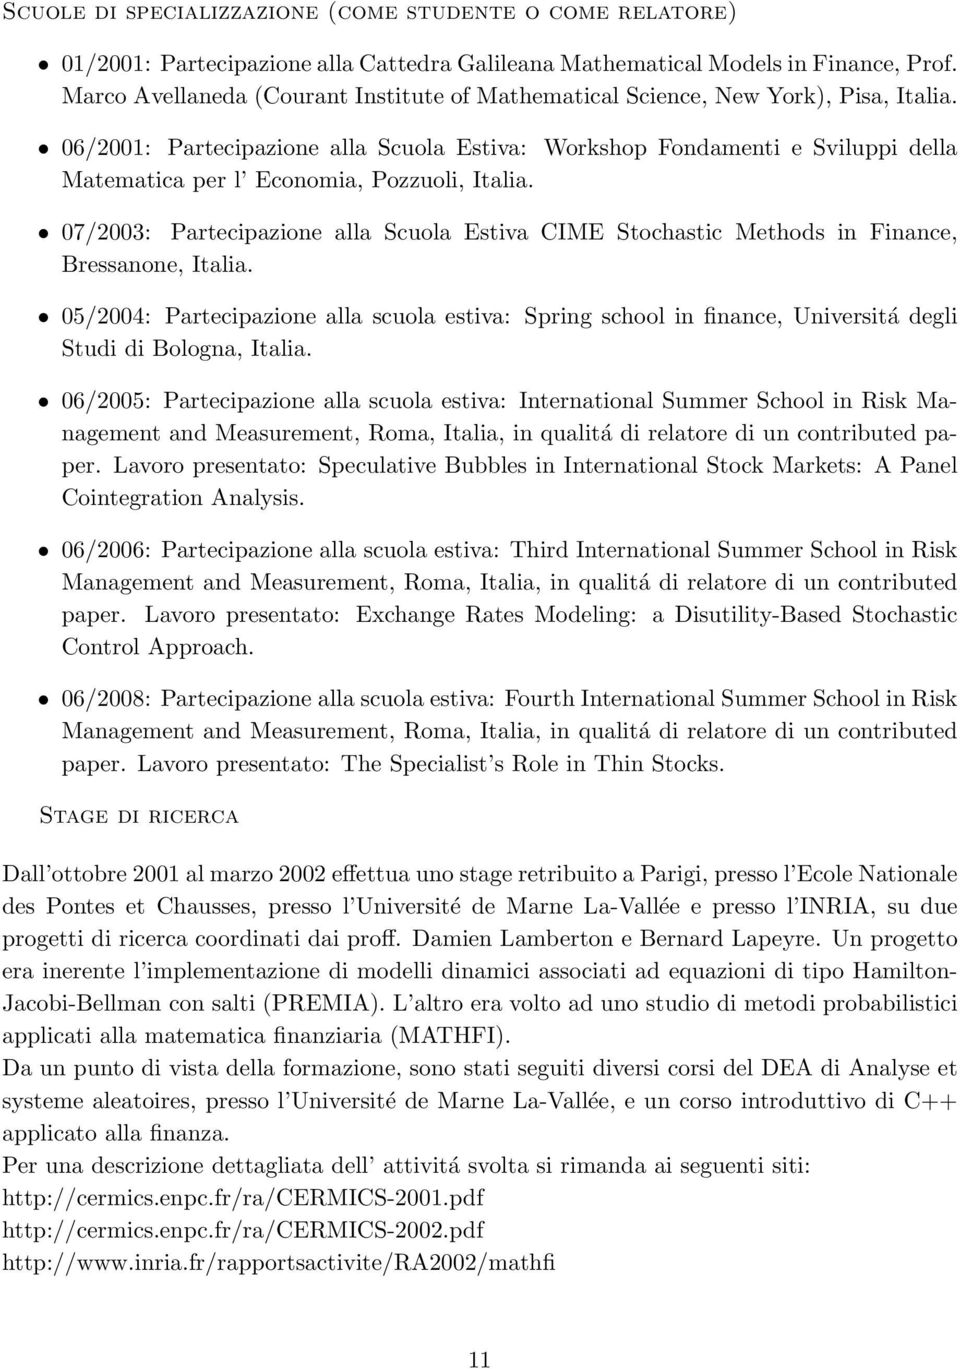 06/2001: Partecipazione alla Scuola Estiva: Workshop Fondamenti e Sviluppi della Matematica per l Economia, Pozzuoli, Italia.